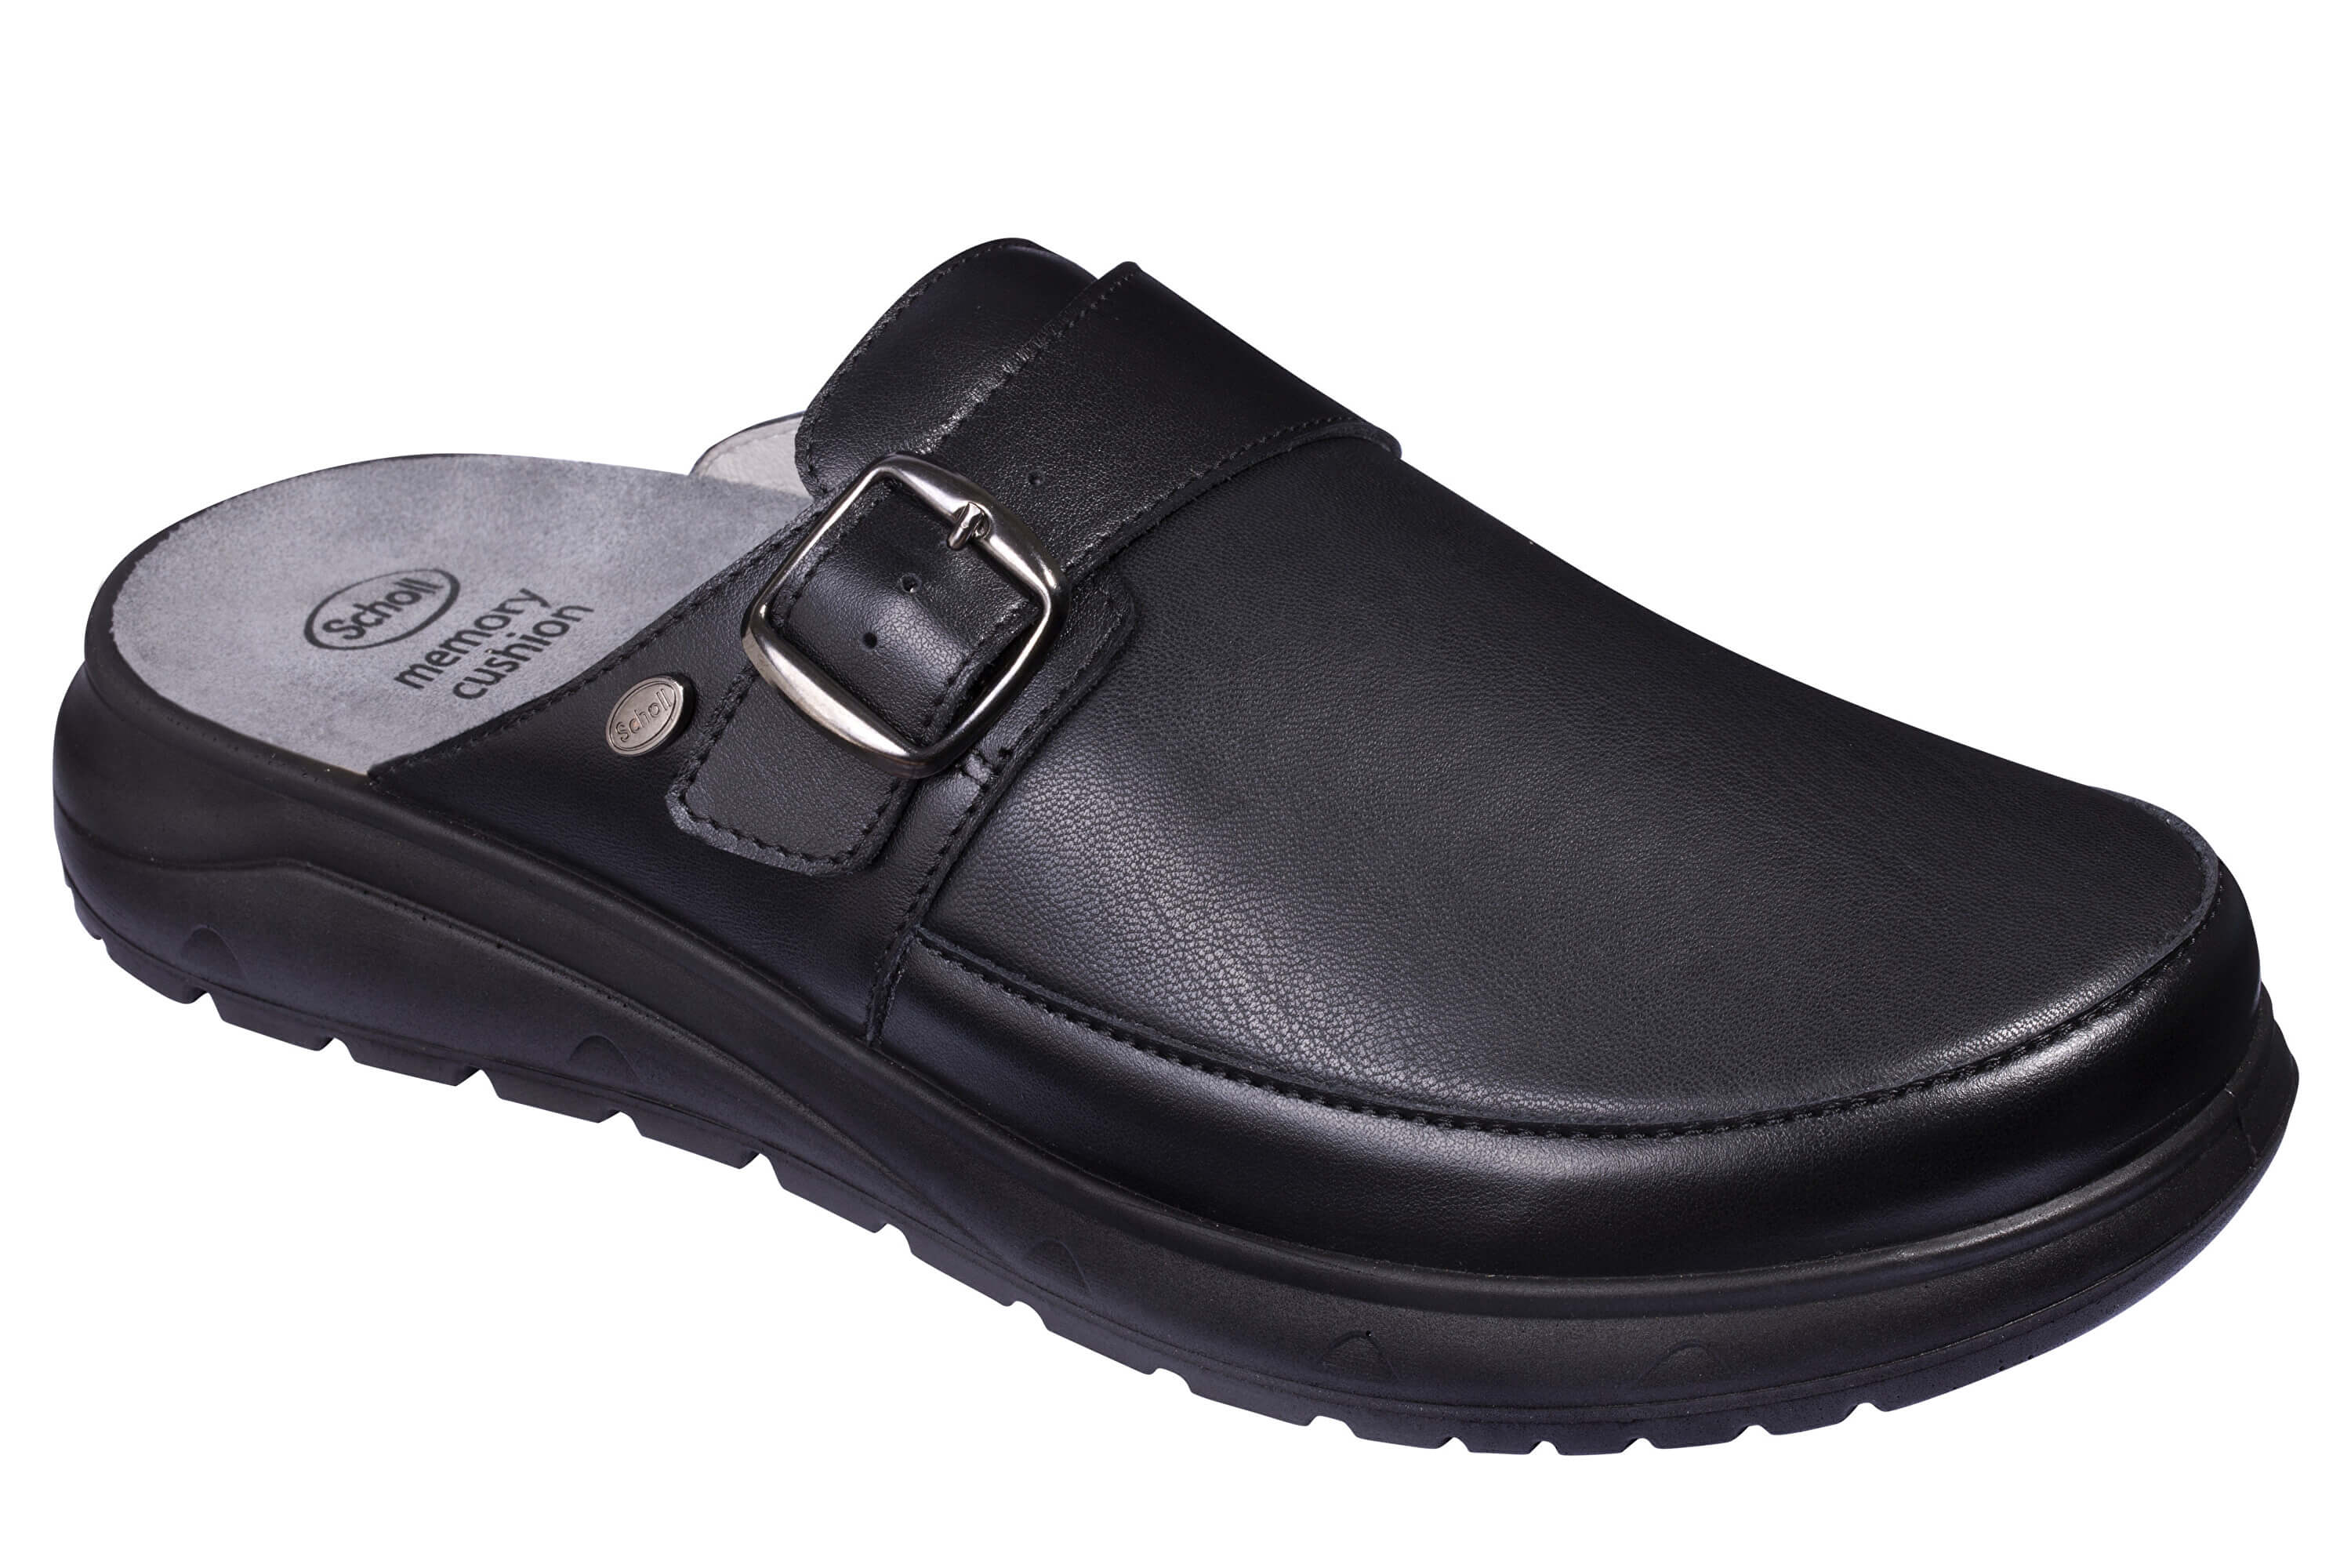 Zobrazit detail výrobku Scholl Zdravotní obuv - KLAUS ELASTIC Black 45 + 2 měsíce na vrácení zboží